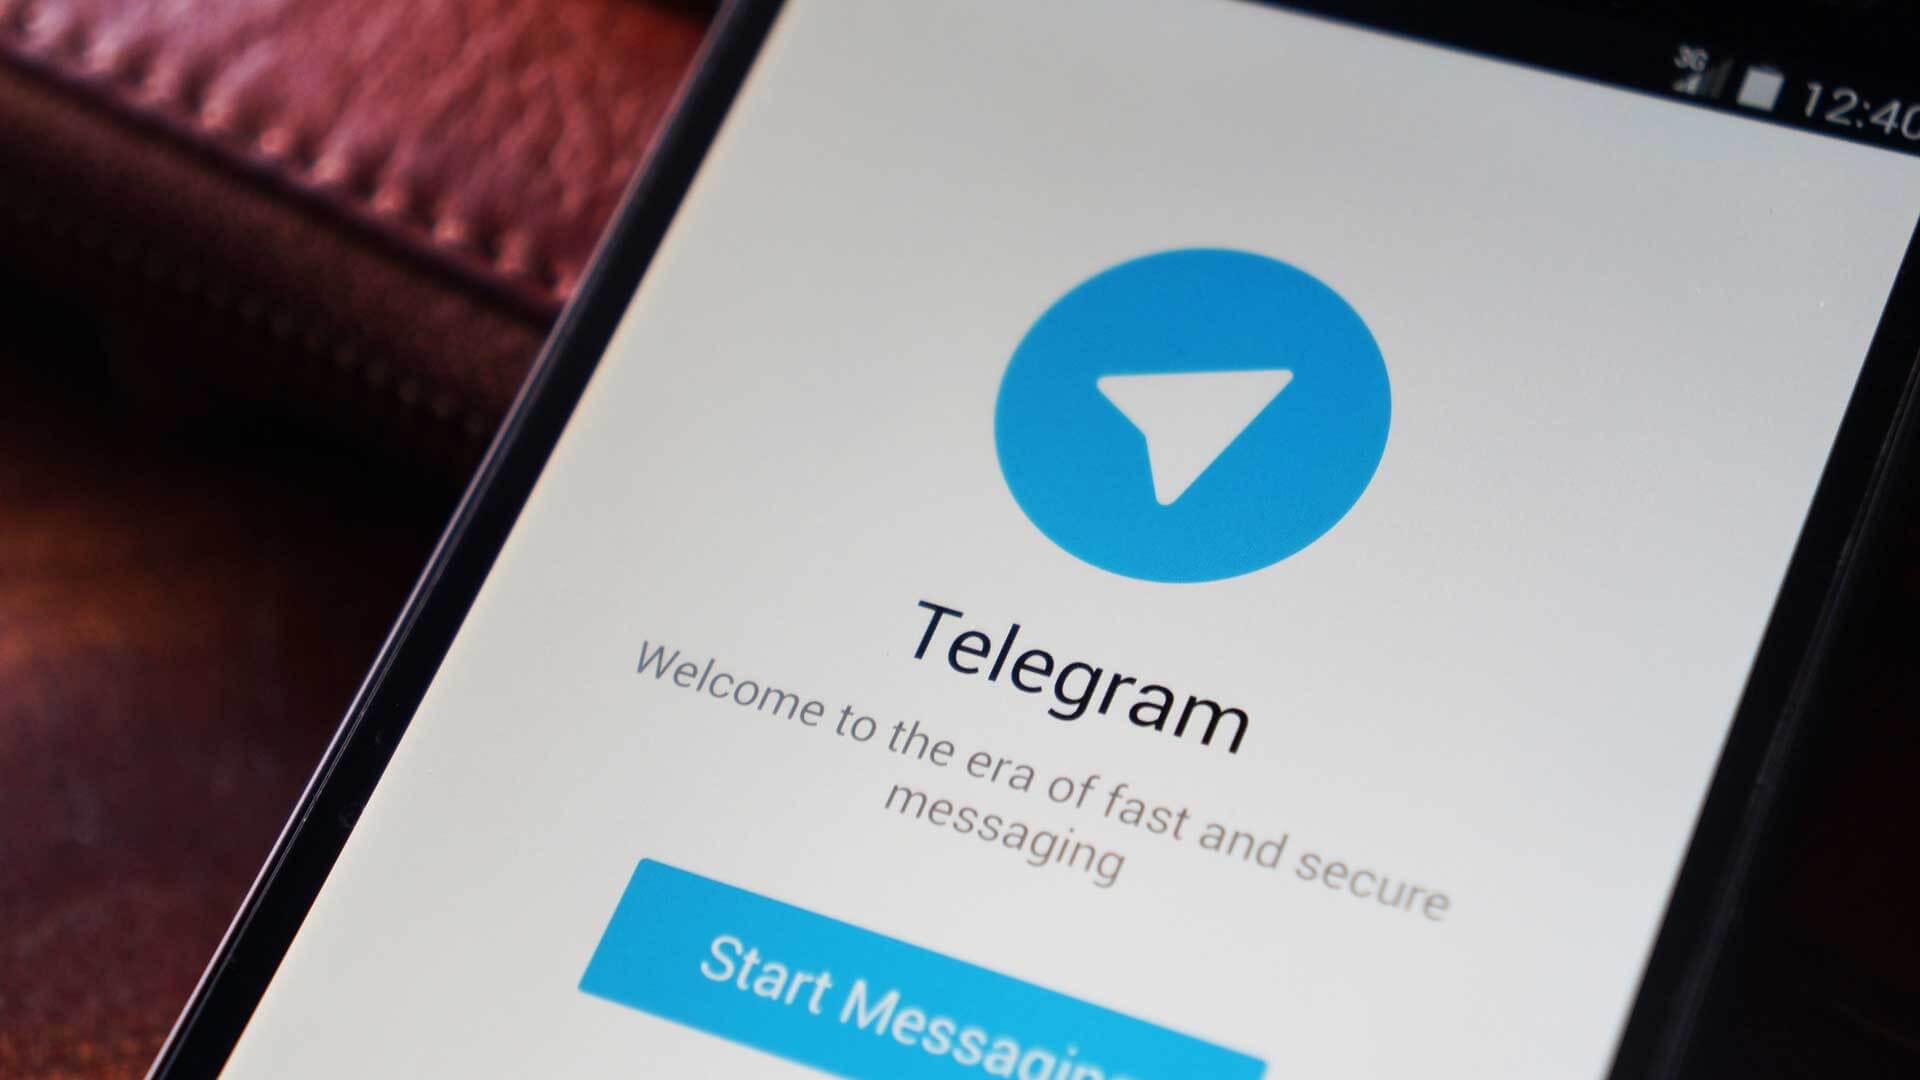 telegram1.jpg